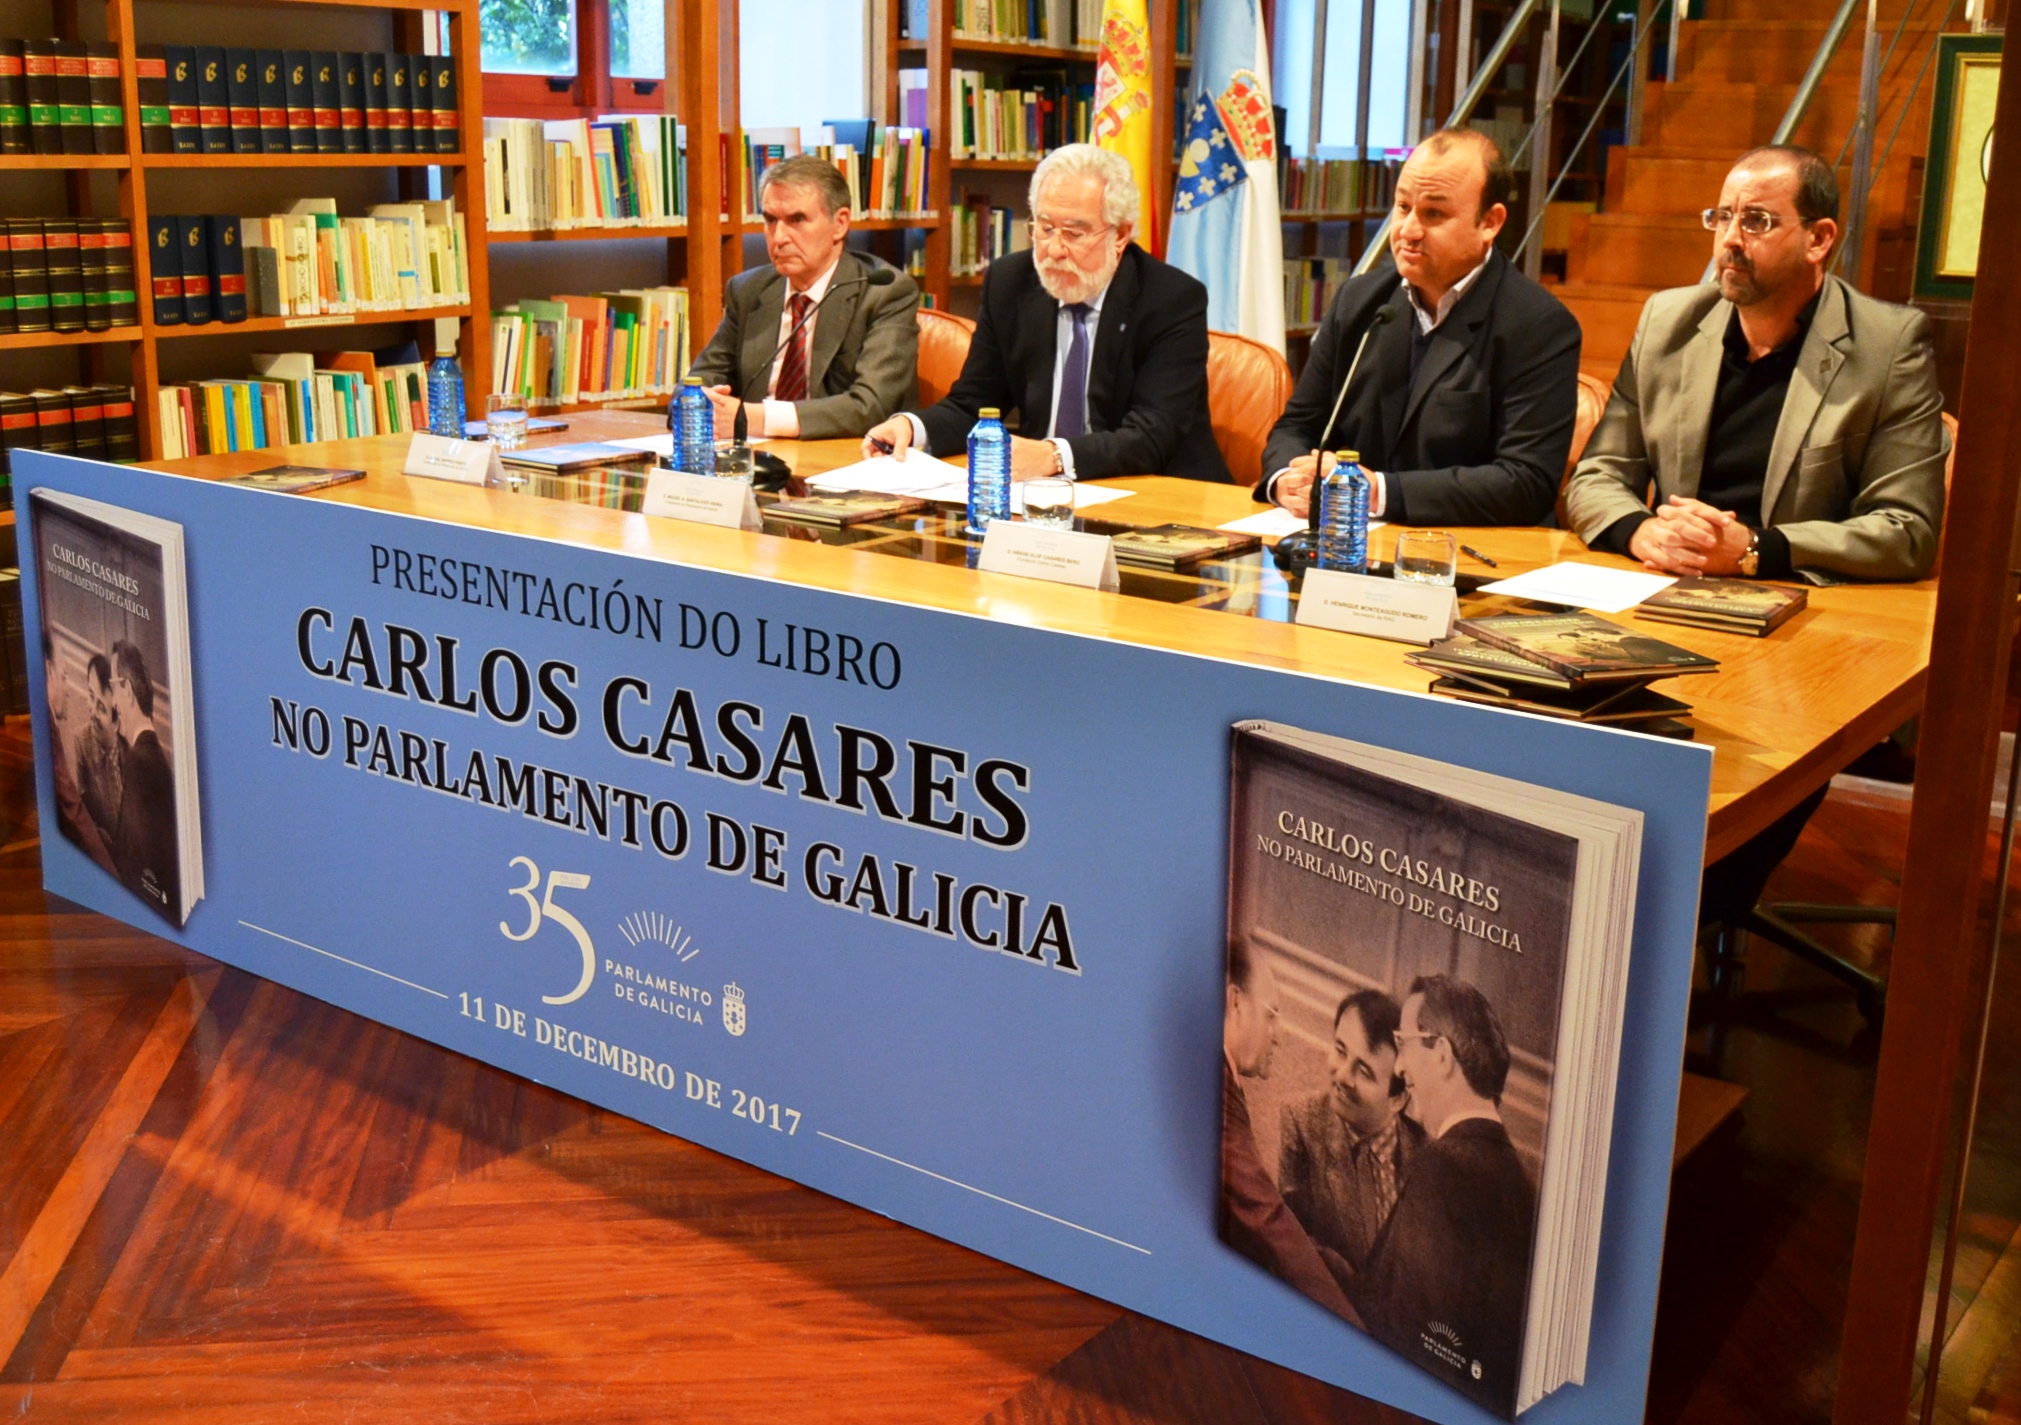 Miguel Ángel Santalices Vieira presidiu o acto de presentación dun libro sobre Carlos Casares